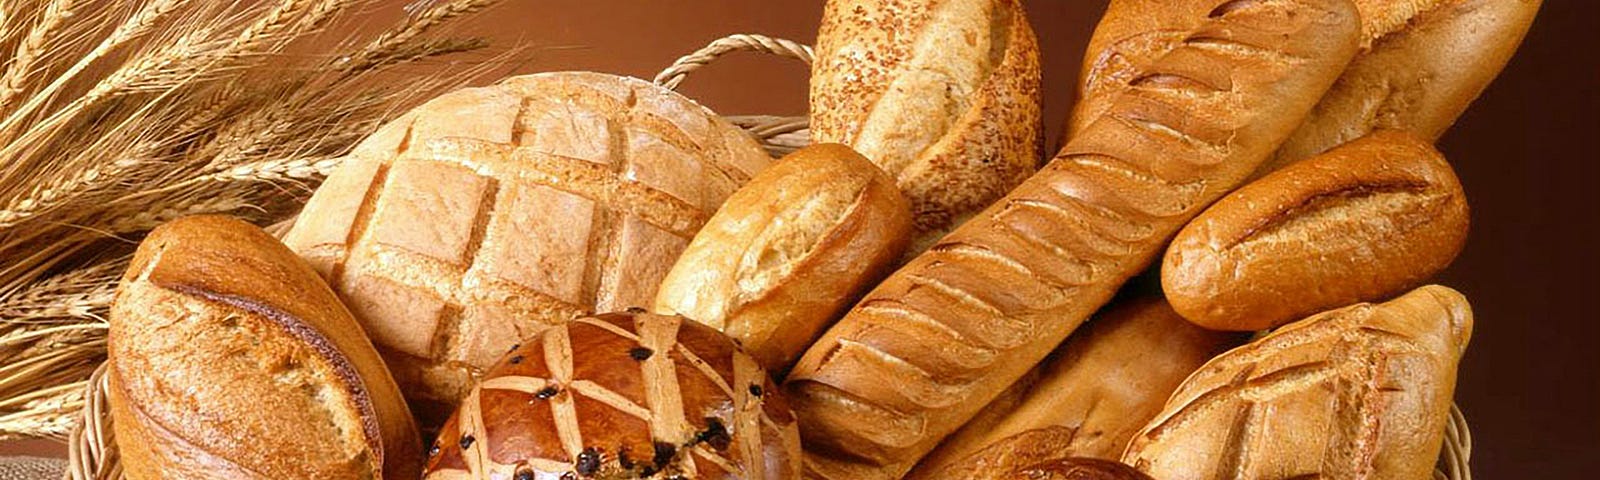 Bread in a basket.